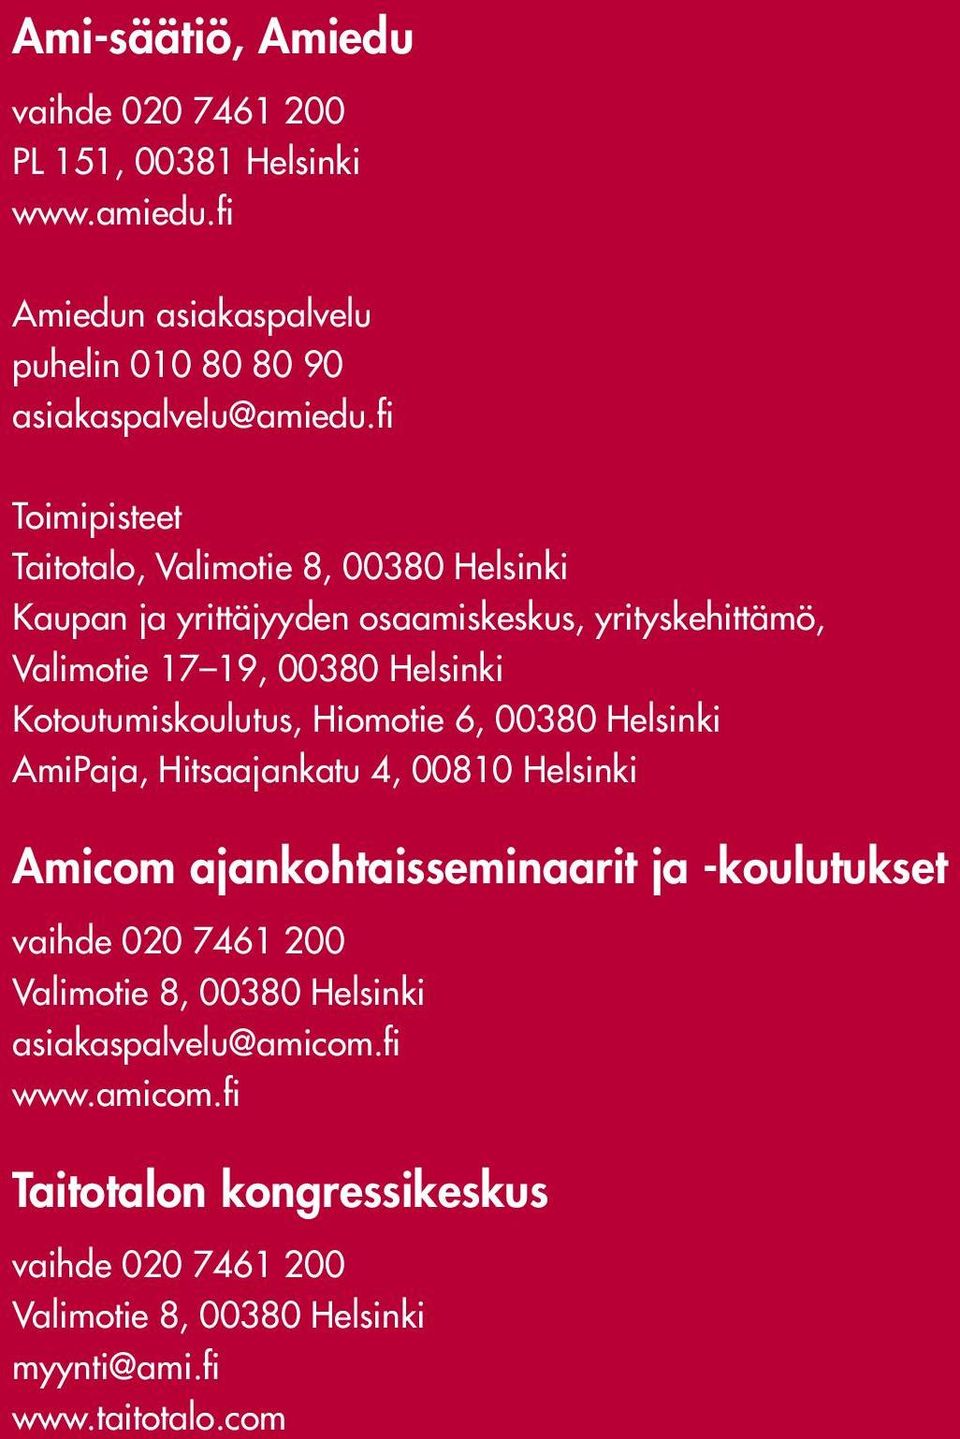 Kotoutumiskoulutus, Hiomotie 6, 38 Helsinki AmiPaja, Hitsaajankatu 4, 81 Helsinki Amicom ajankohtaisseminaarit ja -koulutukset vaihde 2 7461 2